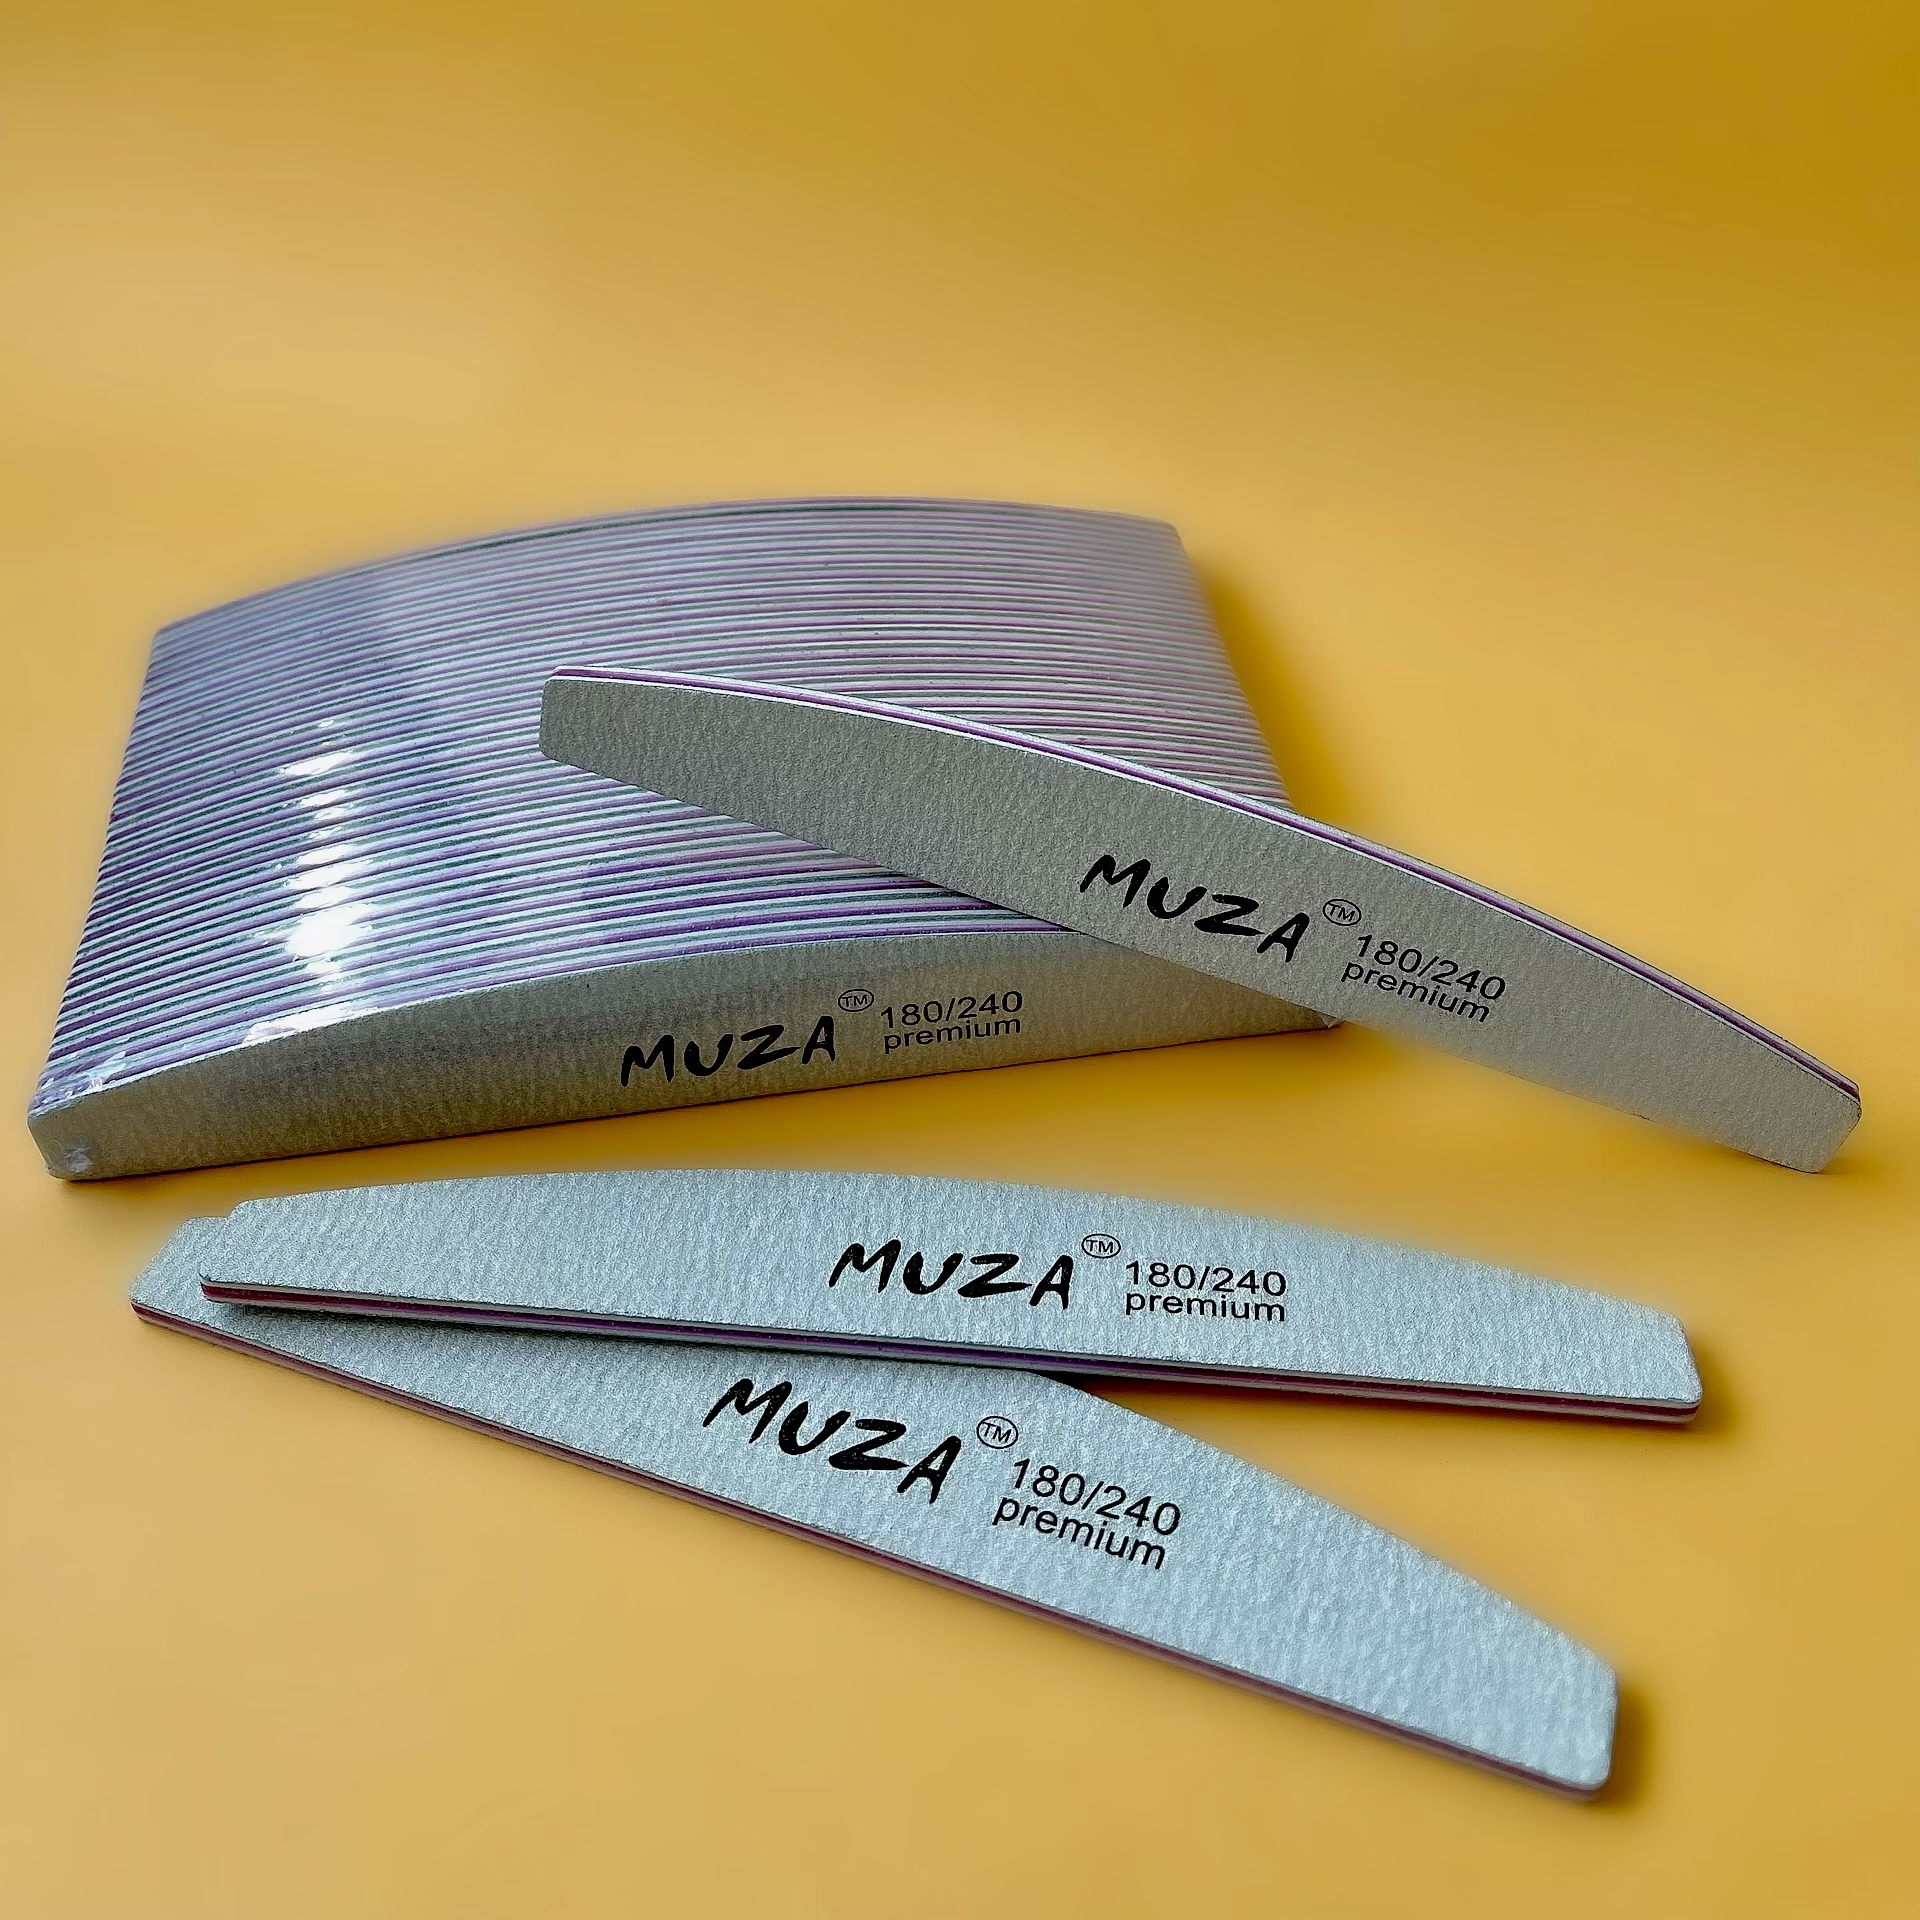 Пилка MUZA Premium (лодка) 180/240, (178x28x4)mm, 25шт